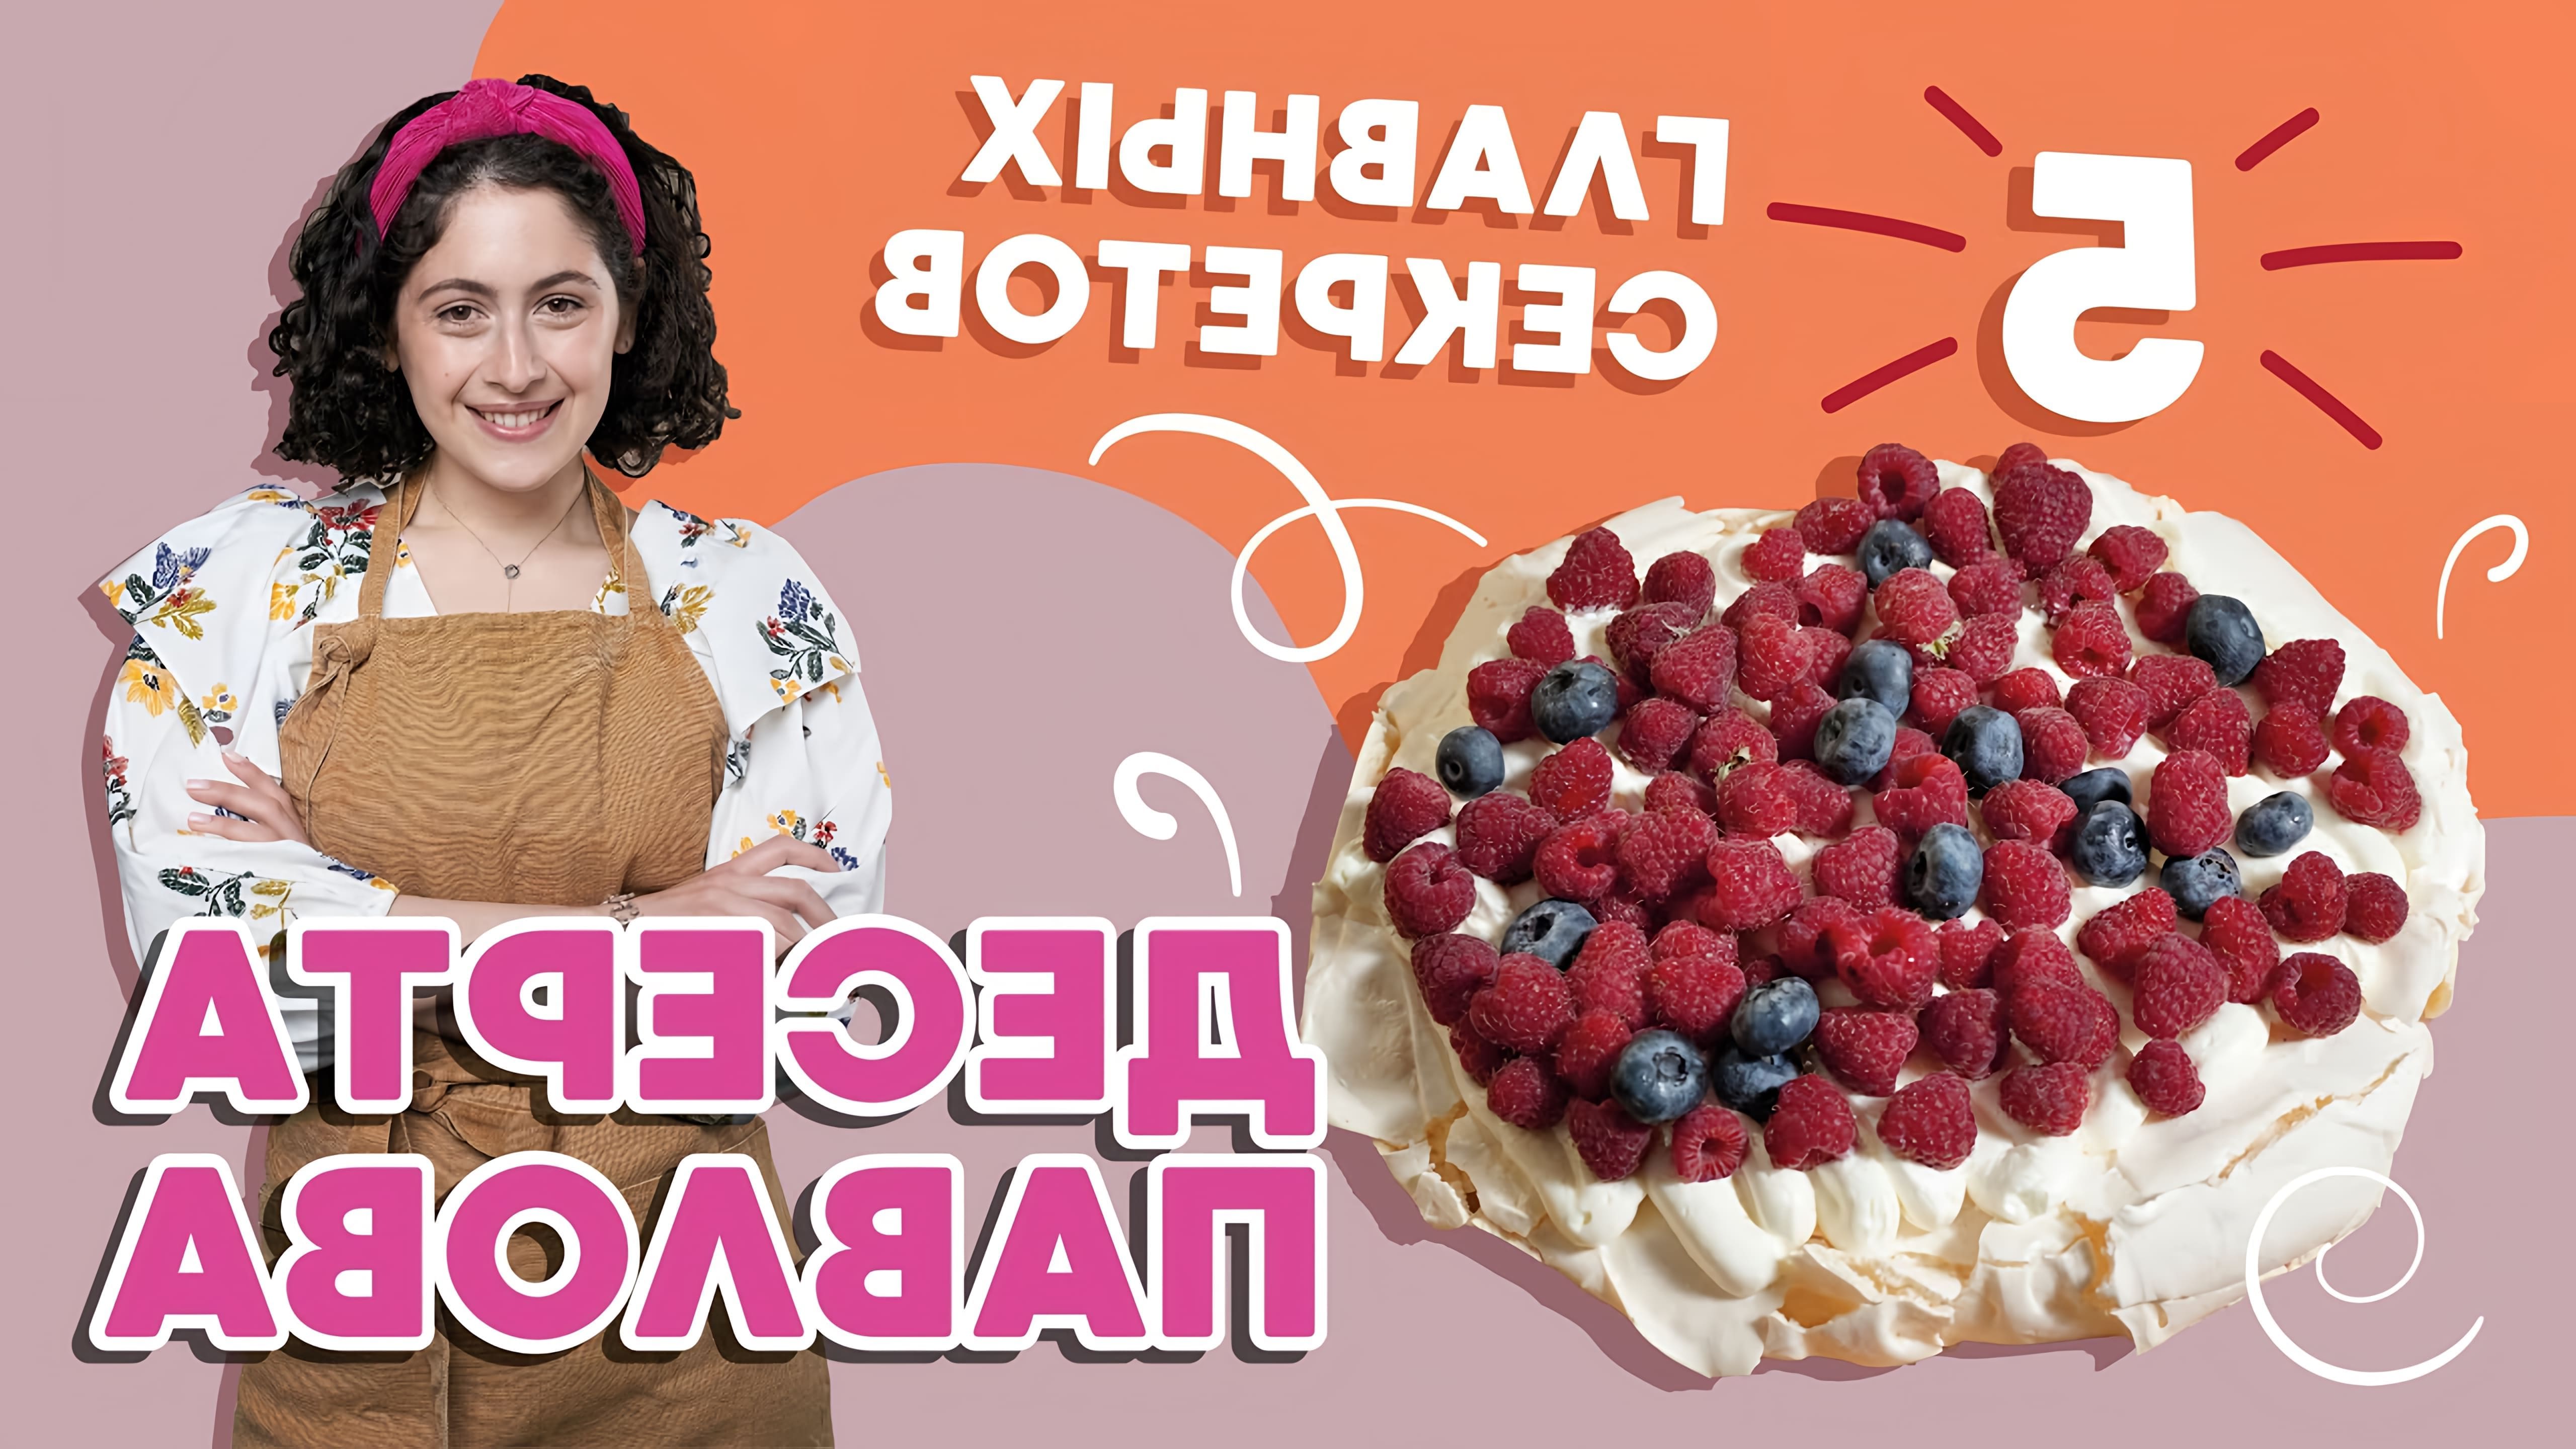 В этом видео девушка делится пятью главными секретами приготовления десерта Павлова